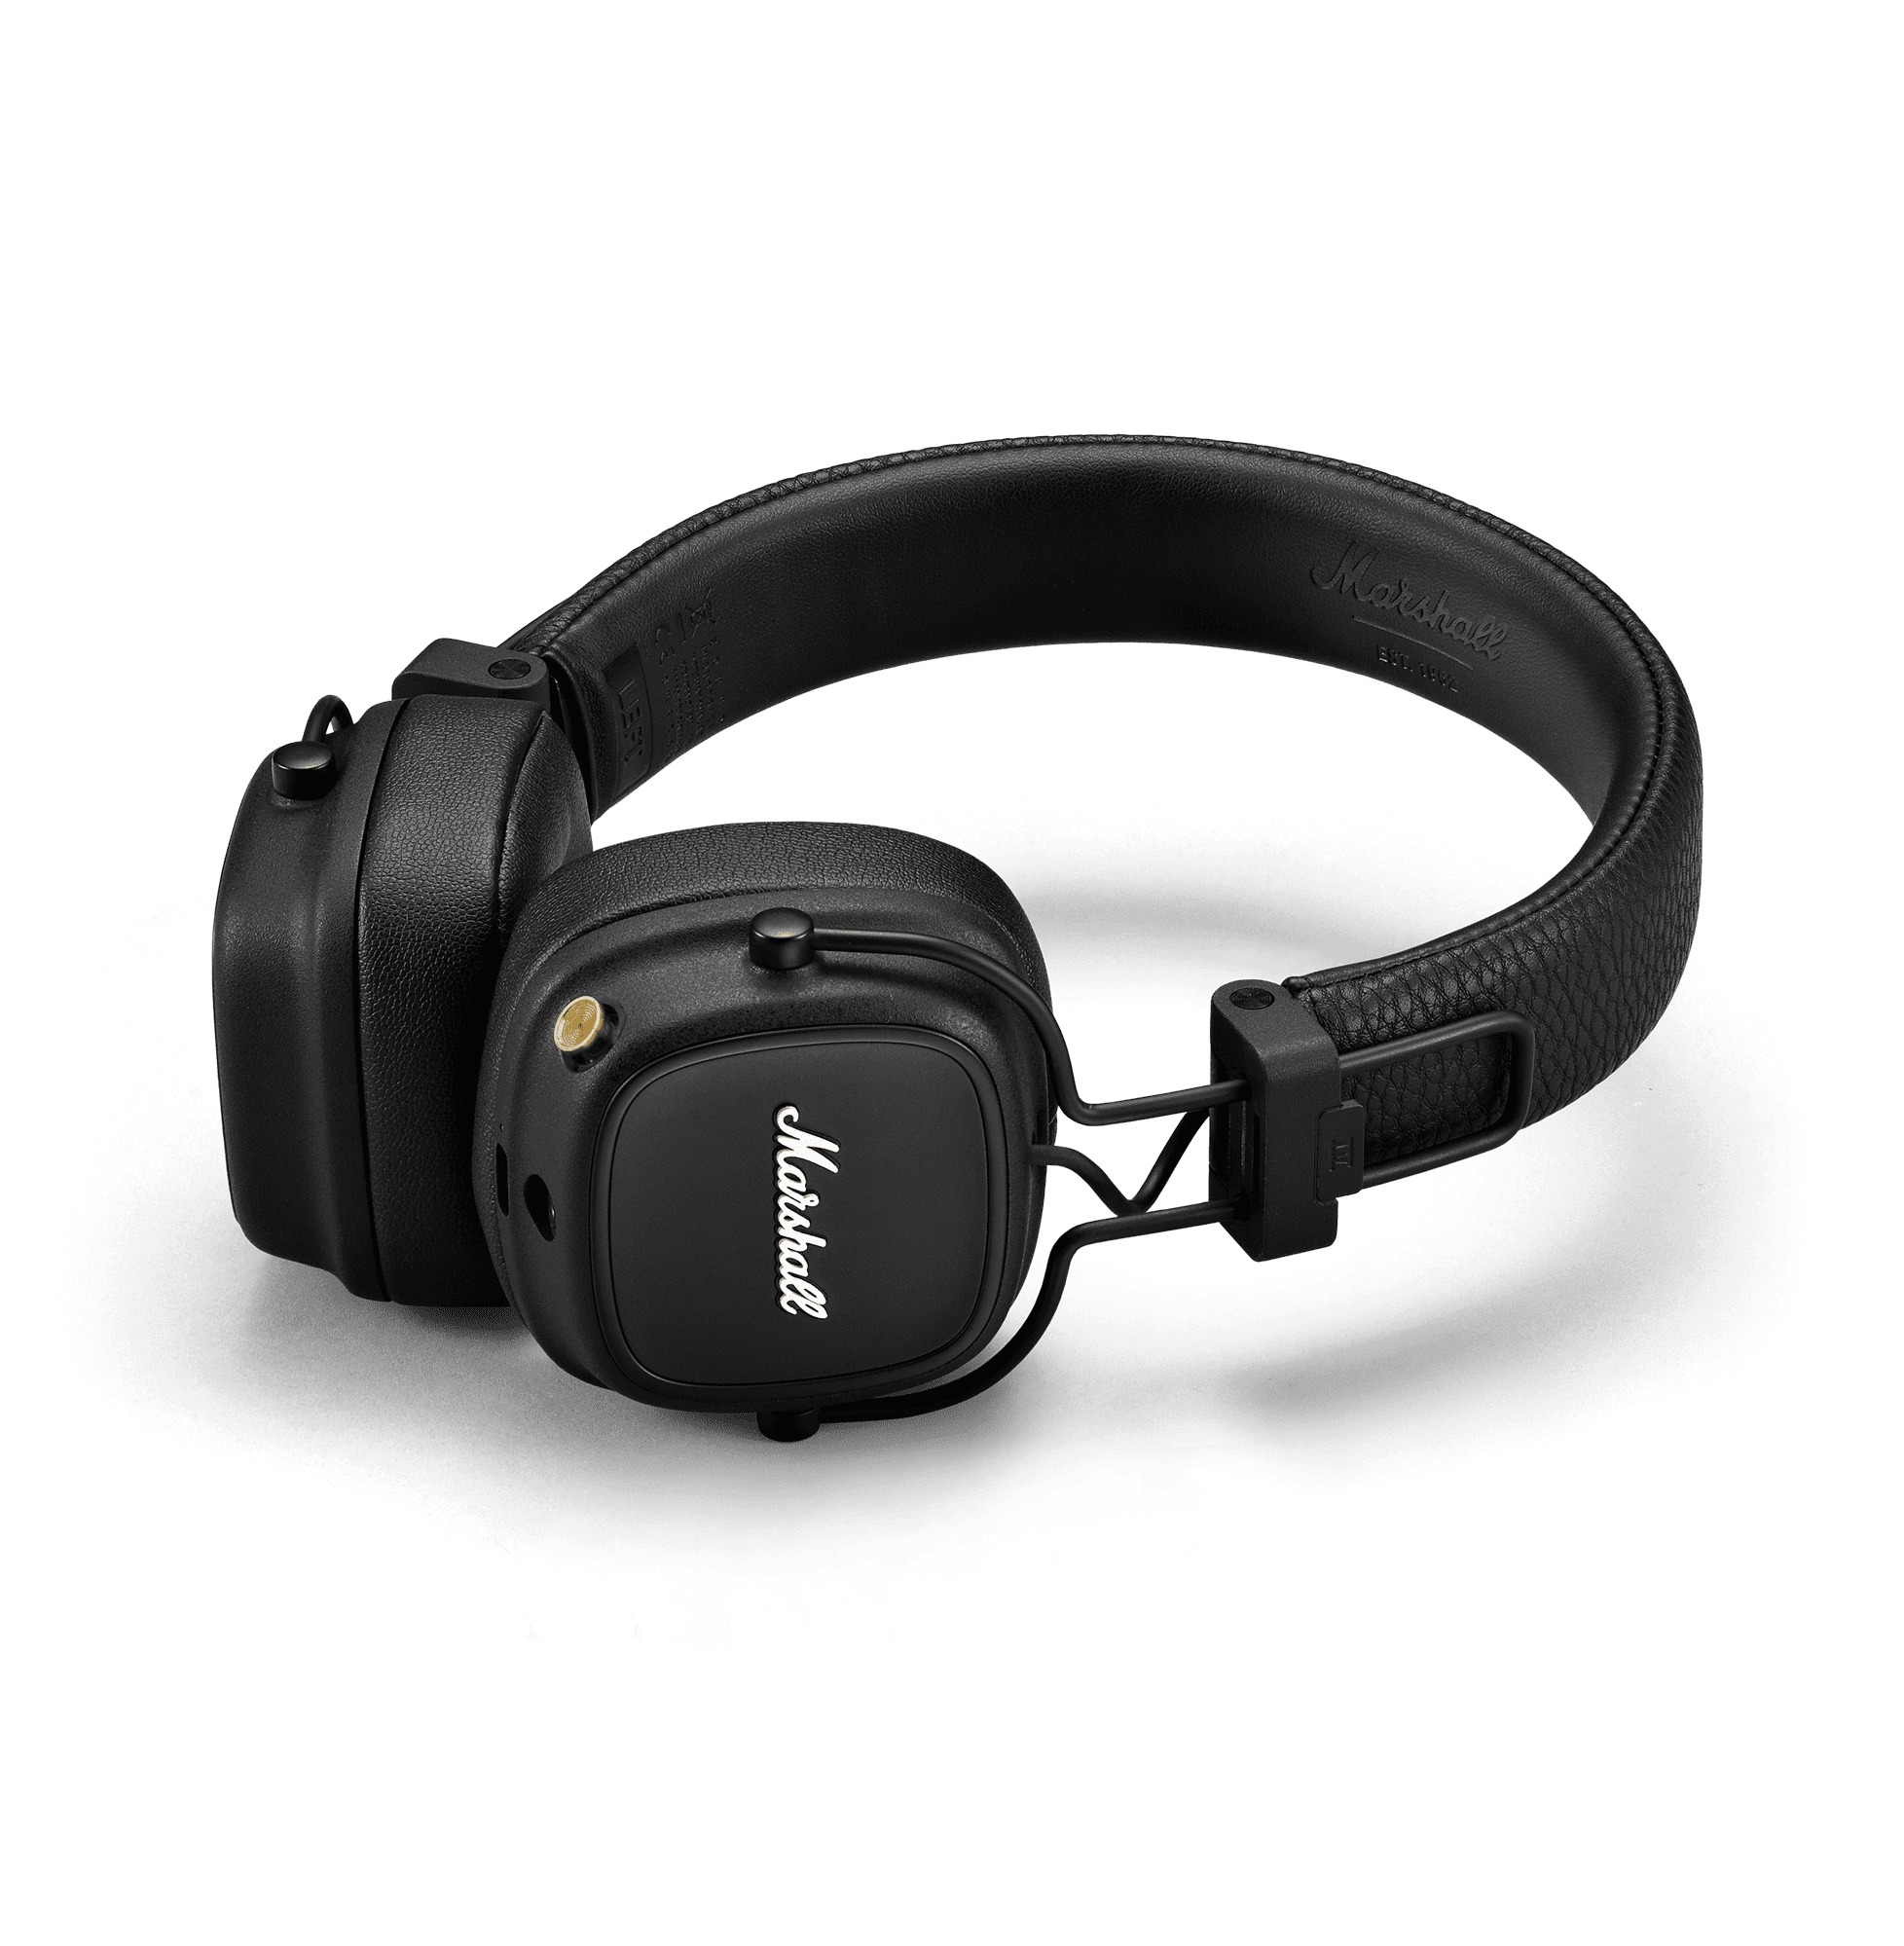 Marshall Major IV Bluetooth On-Ear Headphones Brown